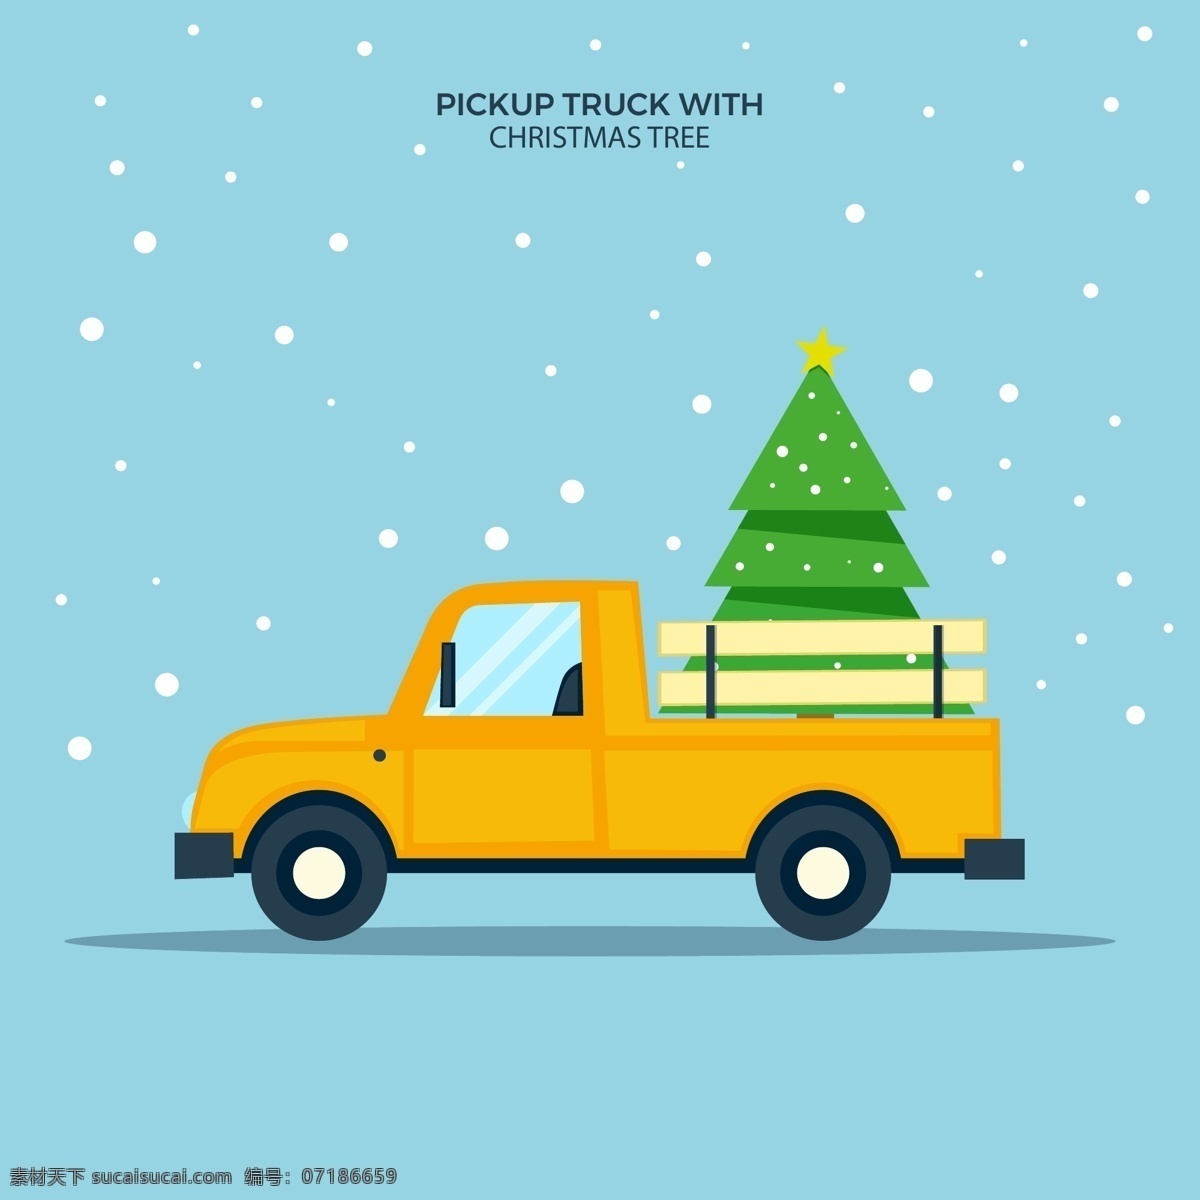 圣诞节汽车 圣诞节元素 圣诞节素材 卡车 皮卡车 圣诞树 运输圣诞树 下雪 圣诞节背景 红色汽车 卡通汽车 手绘汽车 汽车插画 创意圣诞树 交通工具 现代科技